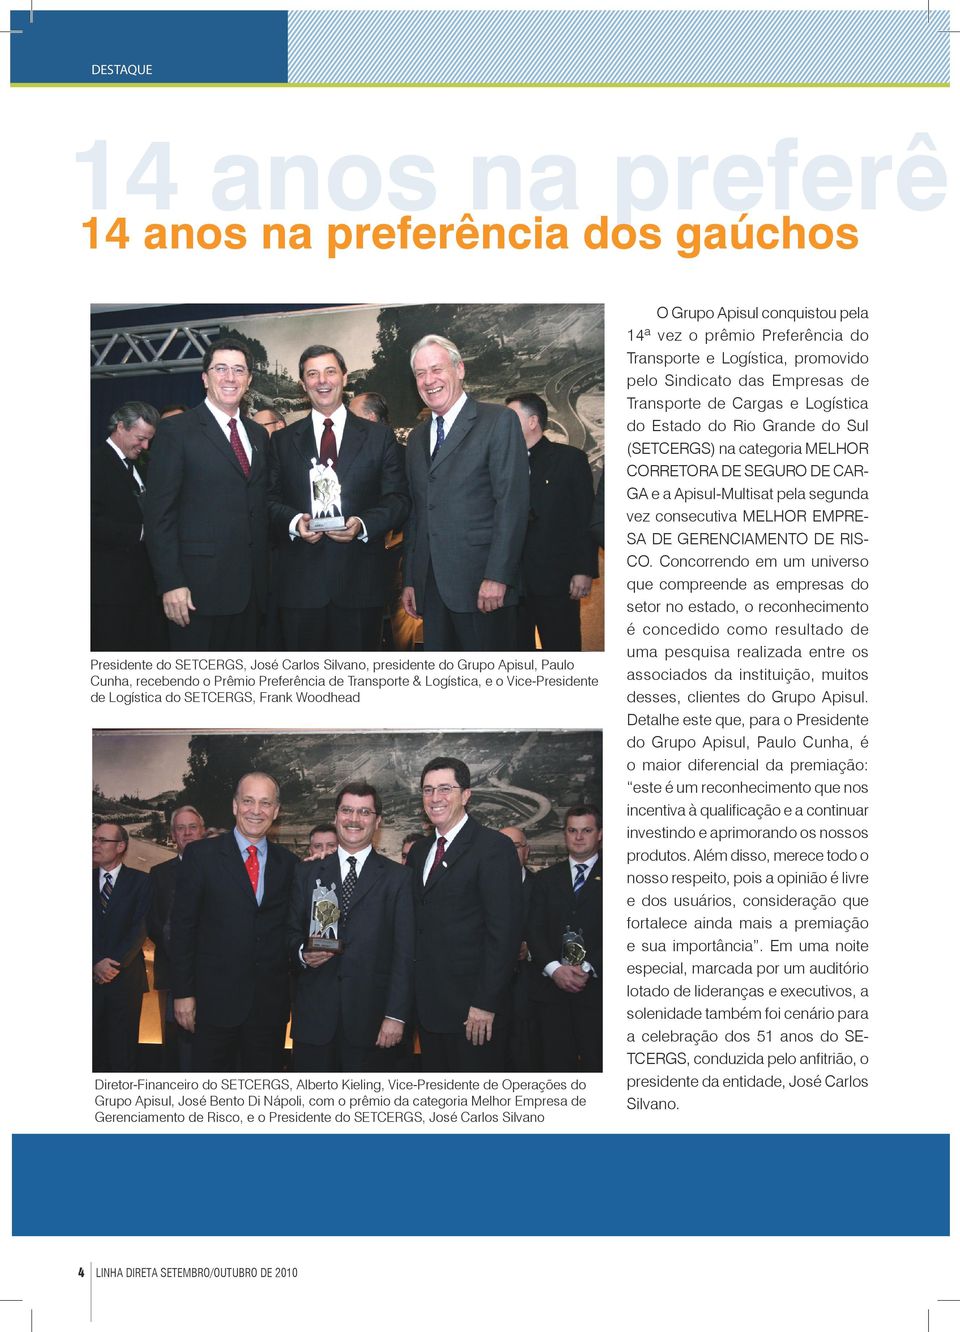 prêmio da categoria Melhor Empresa de Gerenciamento de Risco, e o Presidente do SETCERGS, José Carlos Silvano 4 LINHA DIRETA SETEMBRO/OUTUBRO DE 2010 O Grupo Apisul conquistou pela 14ª vez o prêmio